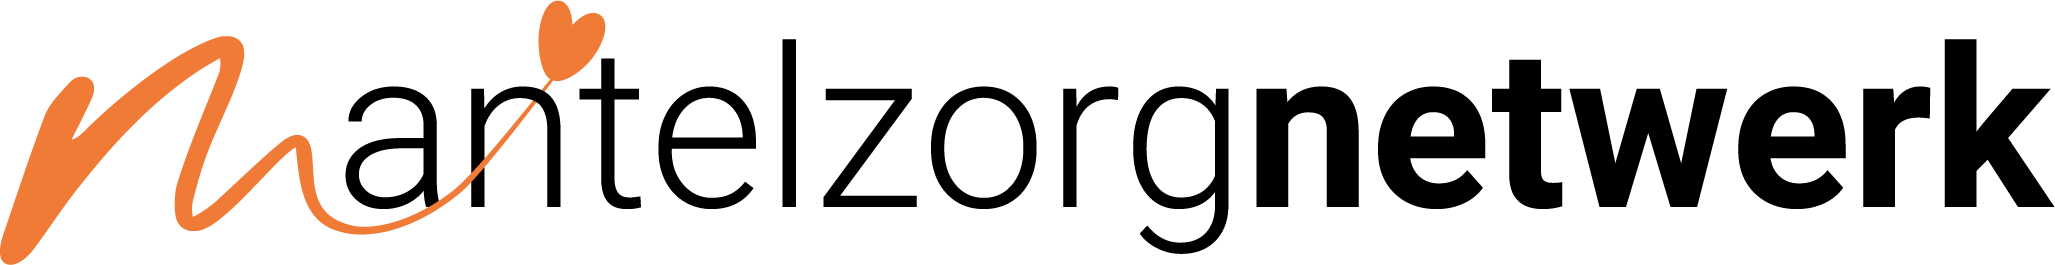 Mantelzorg netwerk logo